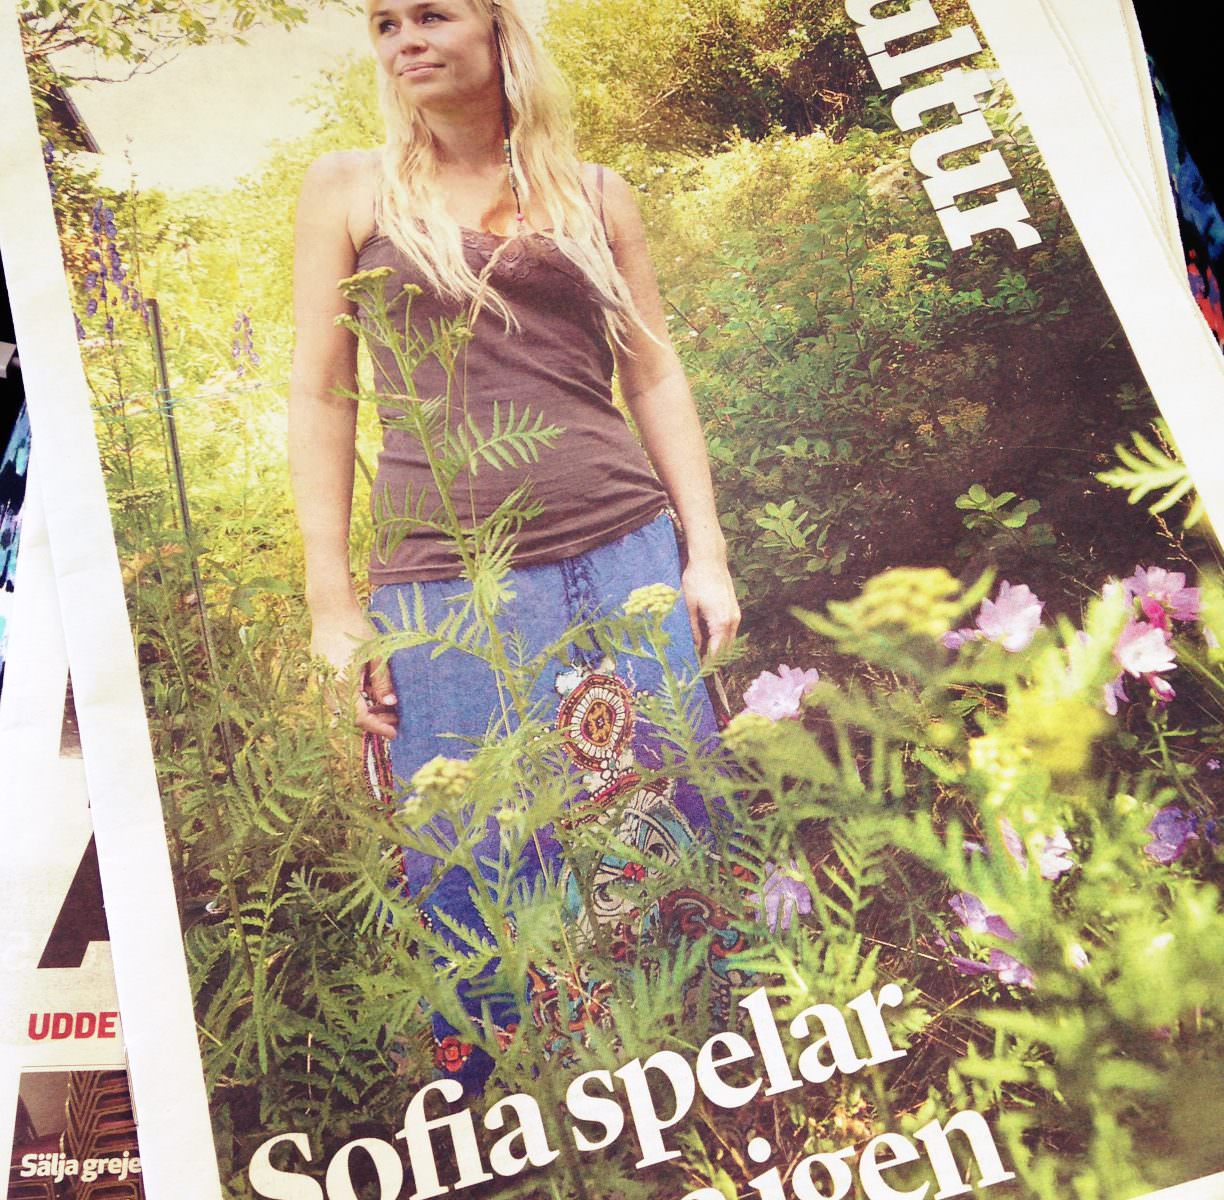 Sofia Talvik in Swedish press